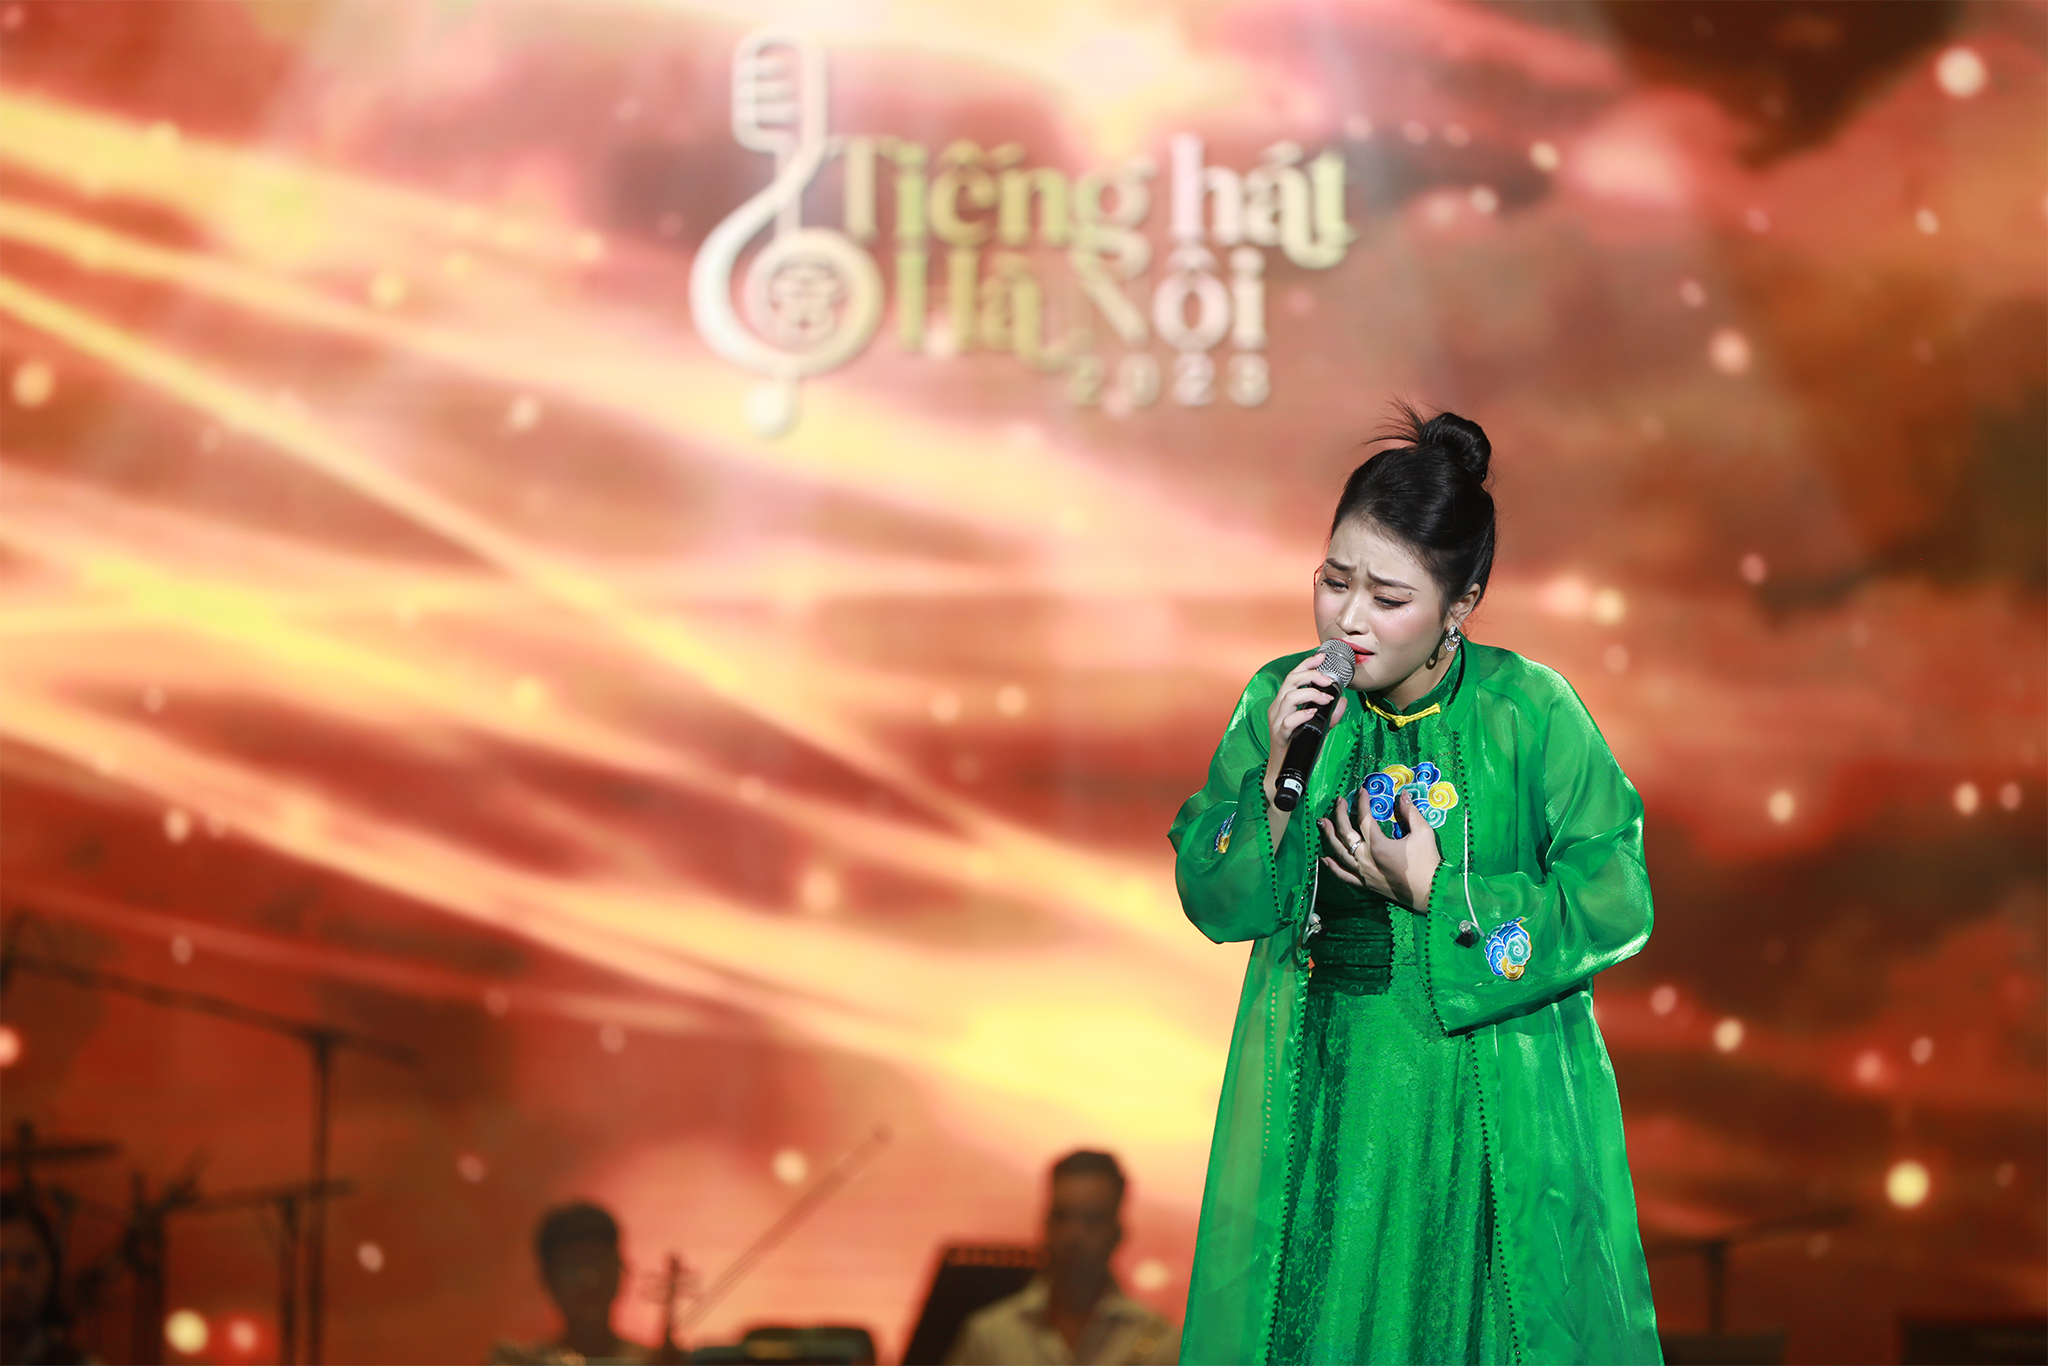 Trần Thị Vân Anh khiến khán giả “hút hồn” bởi chất giọng dầy dặn, cách xử lý ca khúc đầy thông minh và bản lĩnh.